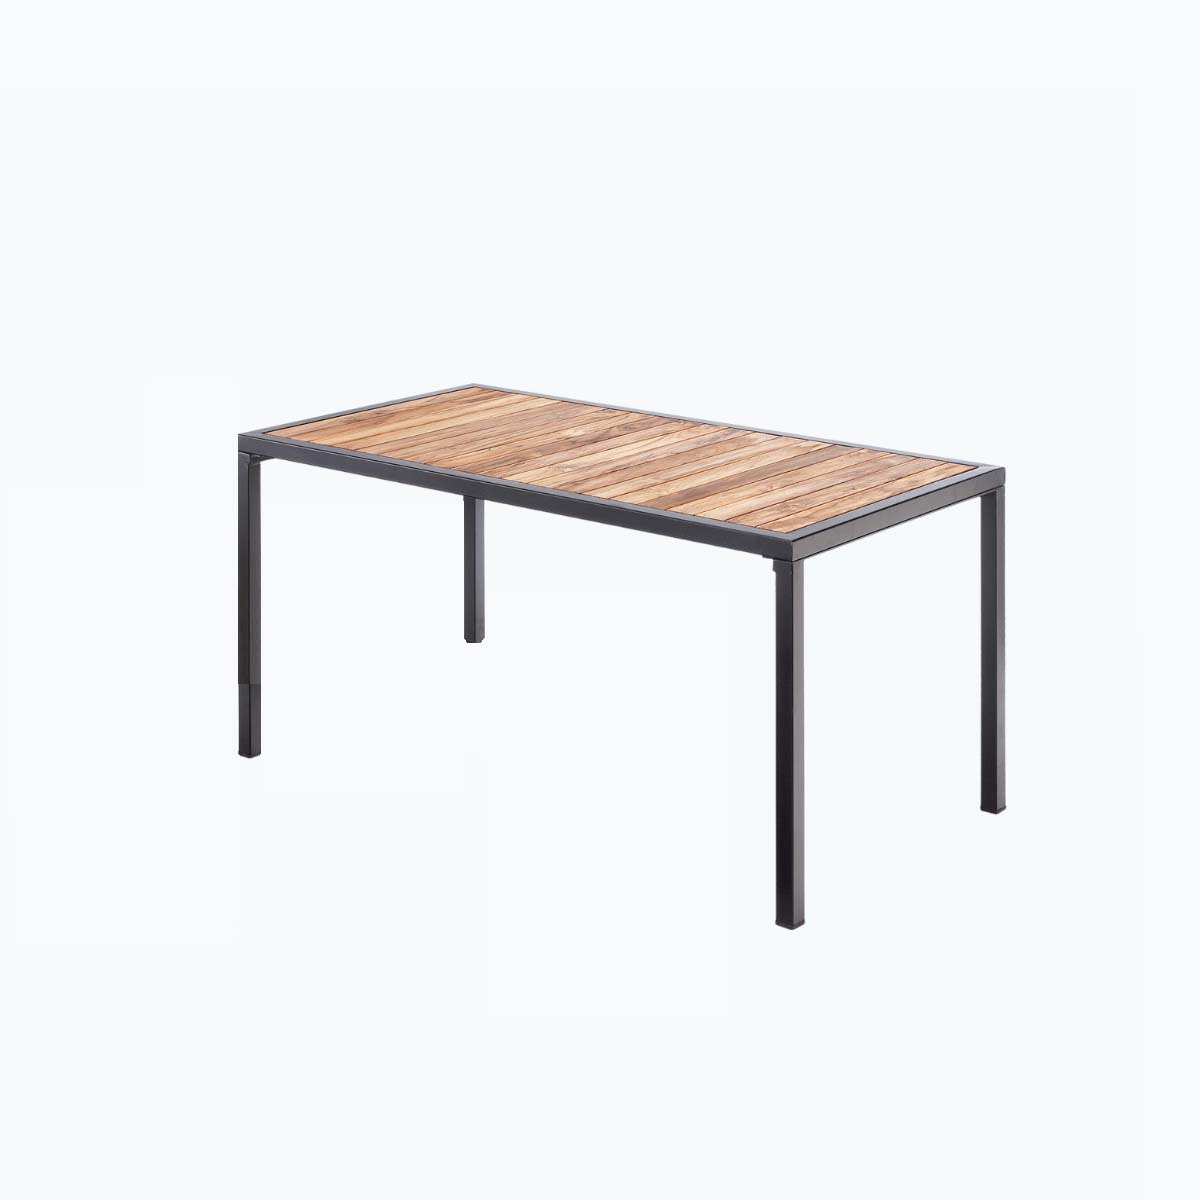 Esplanade Table - 1500 x 800